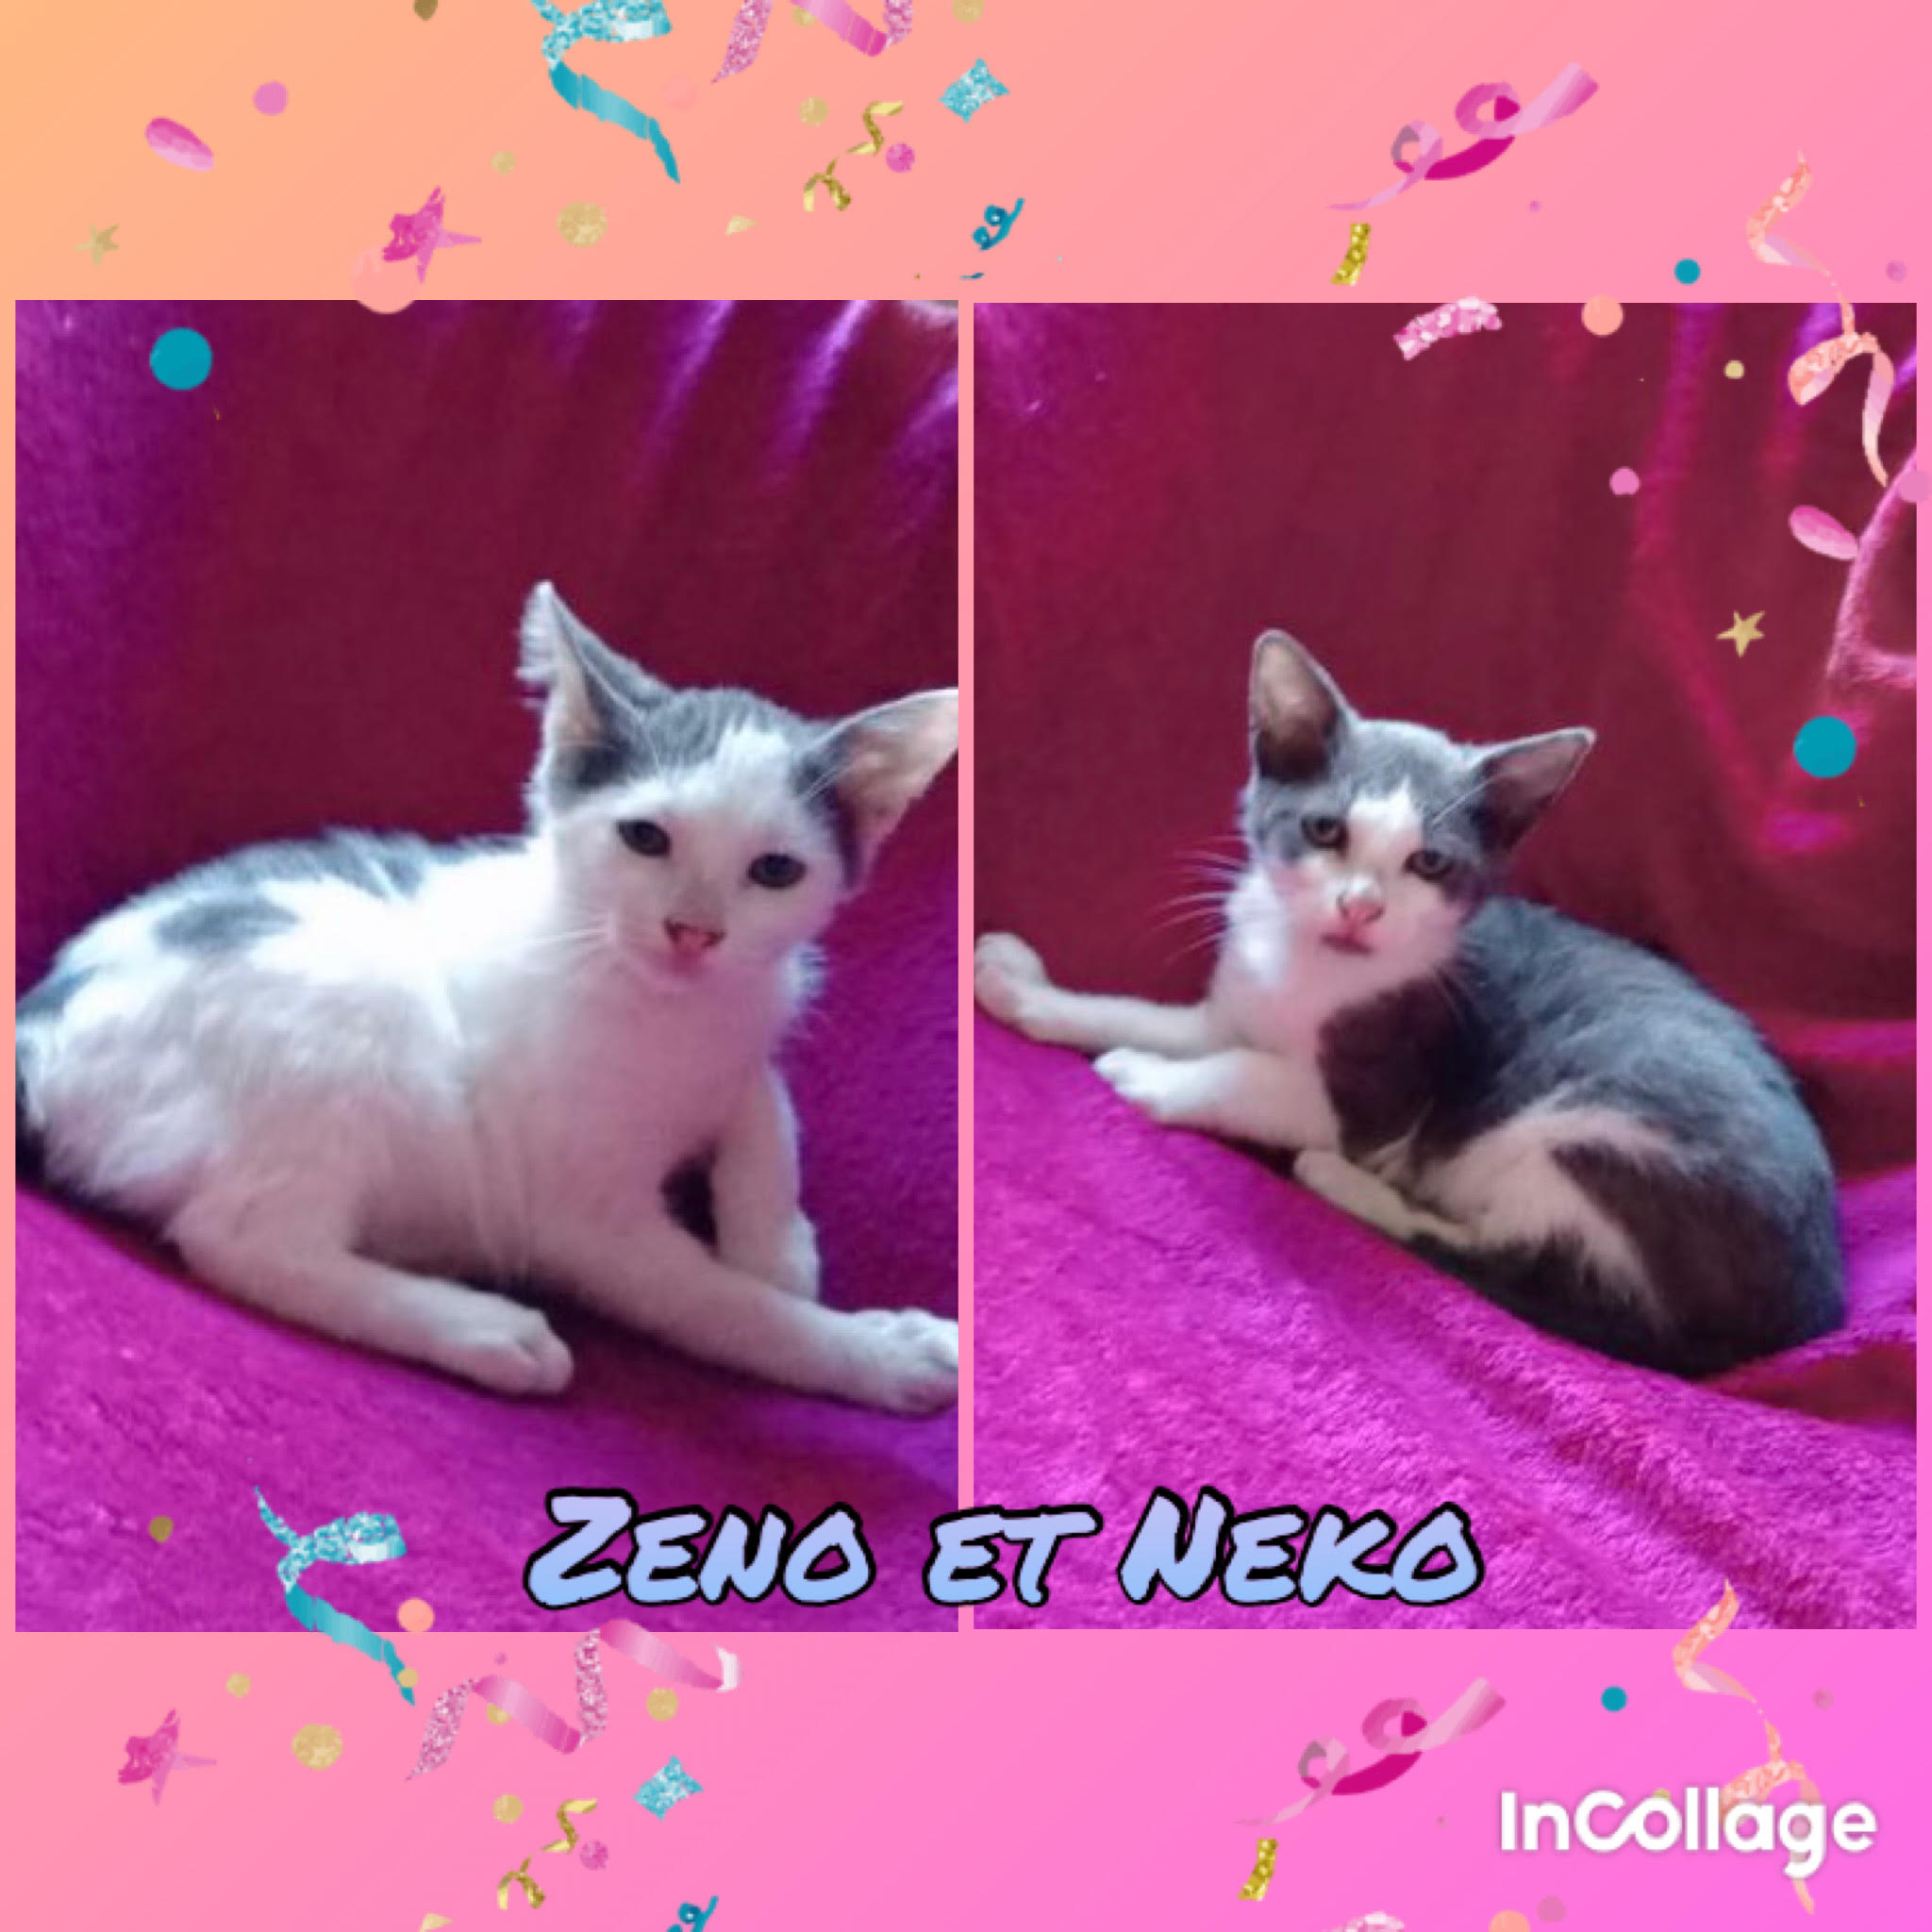 Neko et Zeno